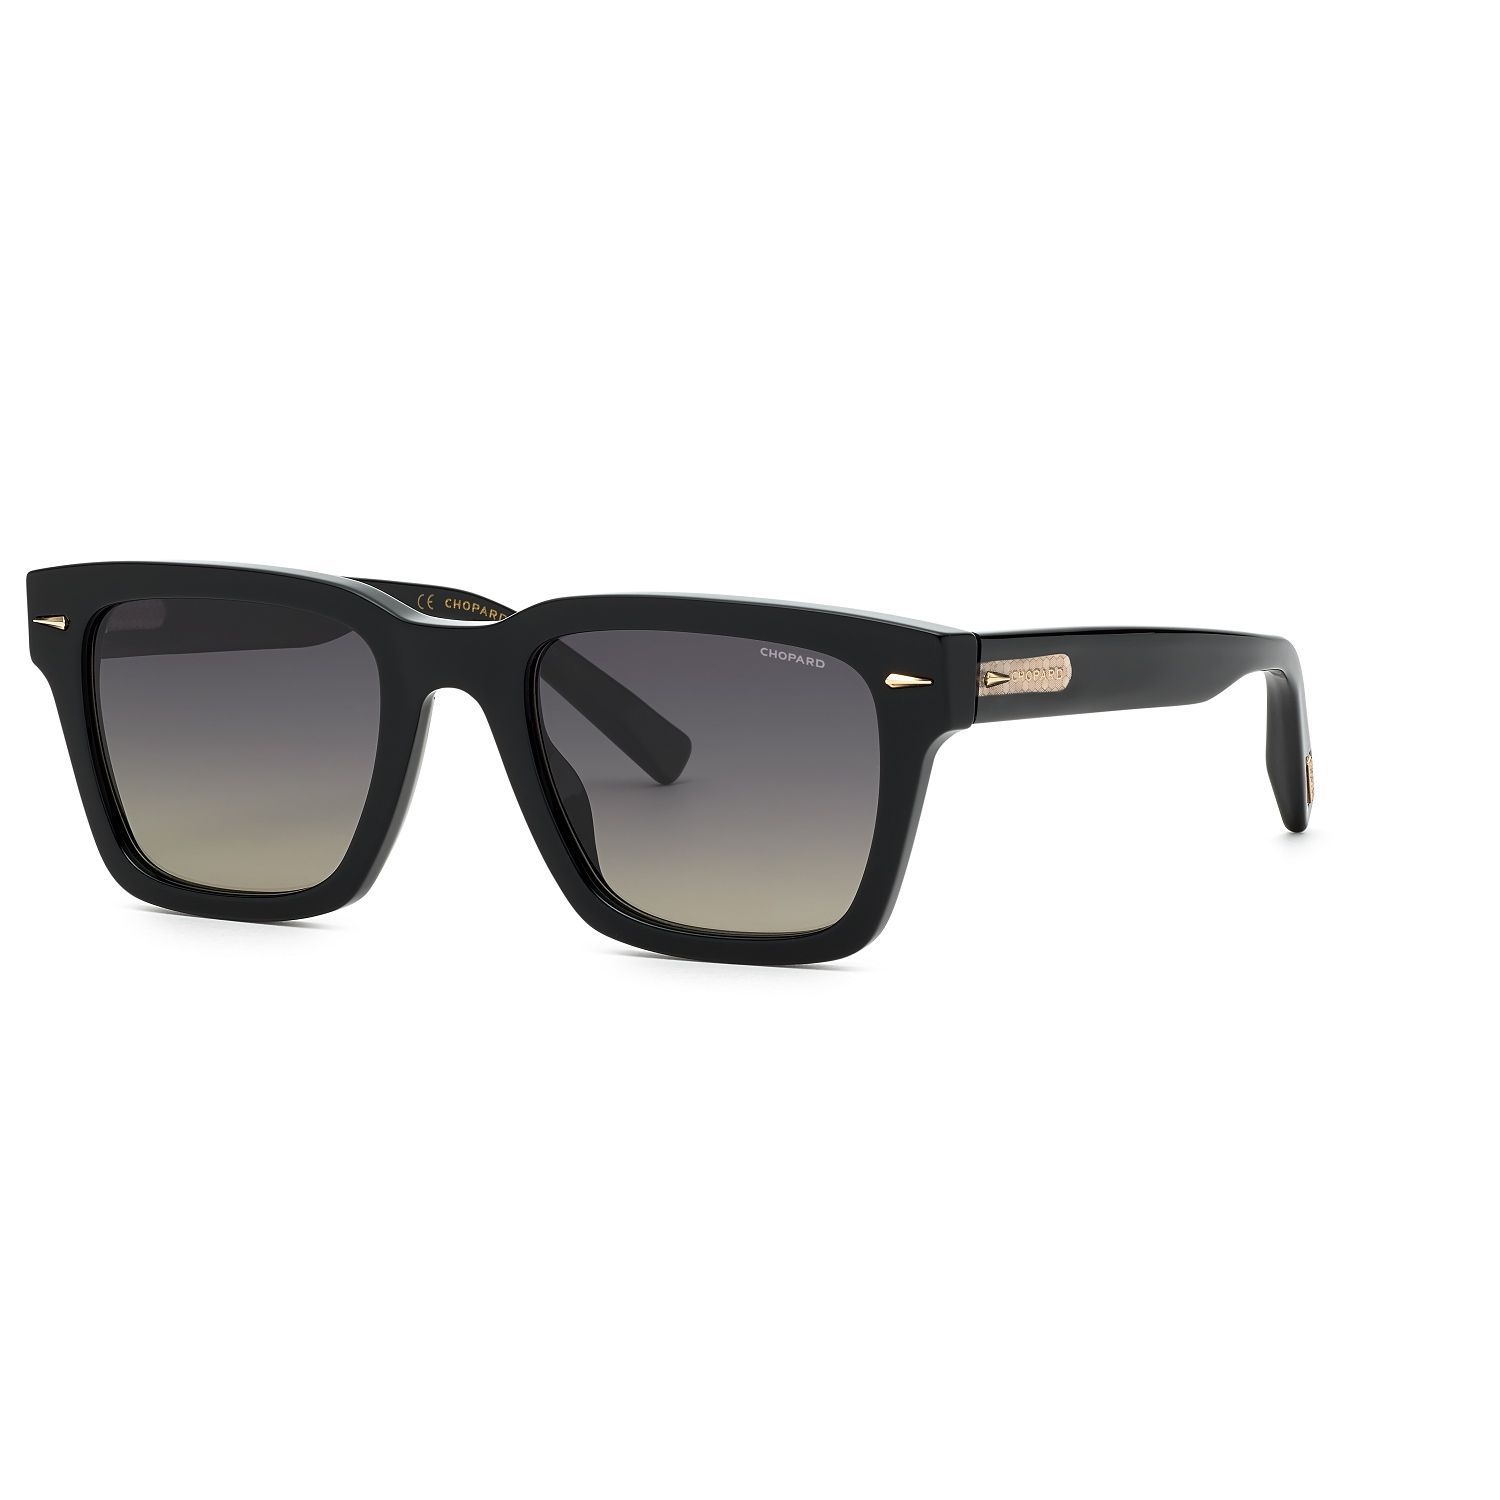 SCH337 Square Sunglasses 700Z - size 52